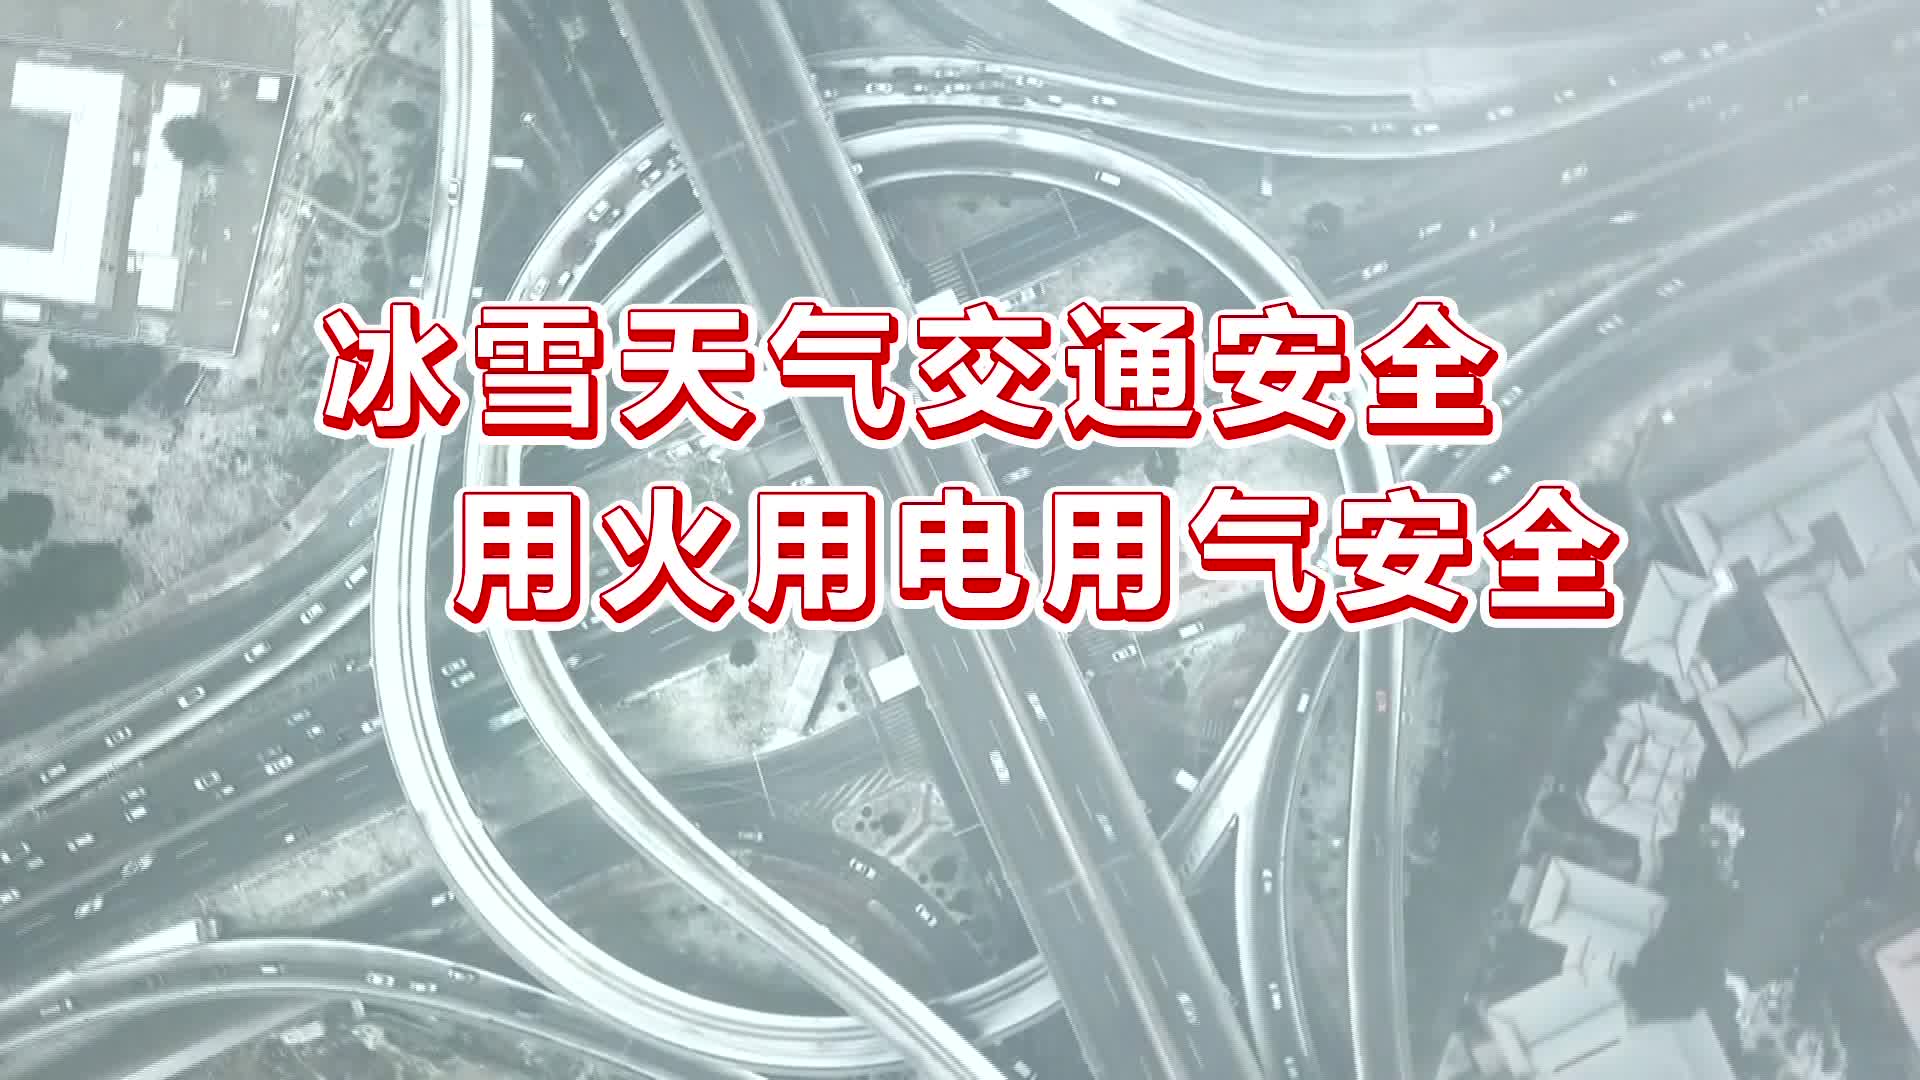 【公益宣传片】冰雪天气交通安全 用火用气用电安全